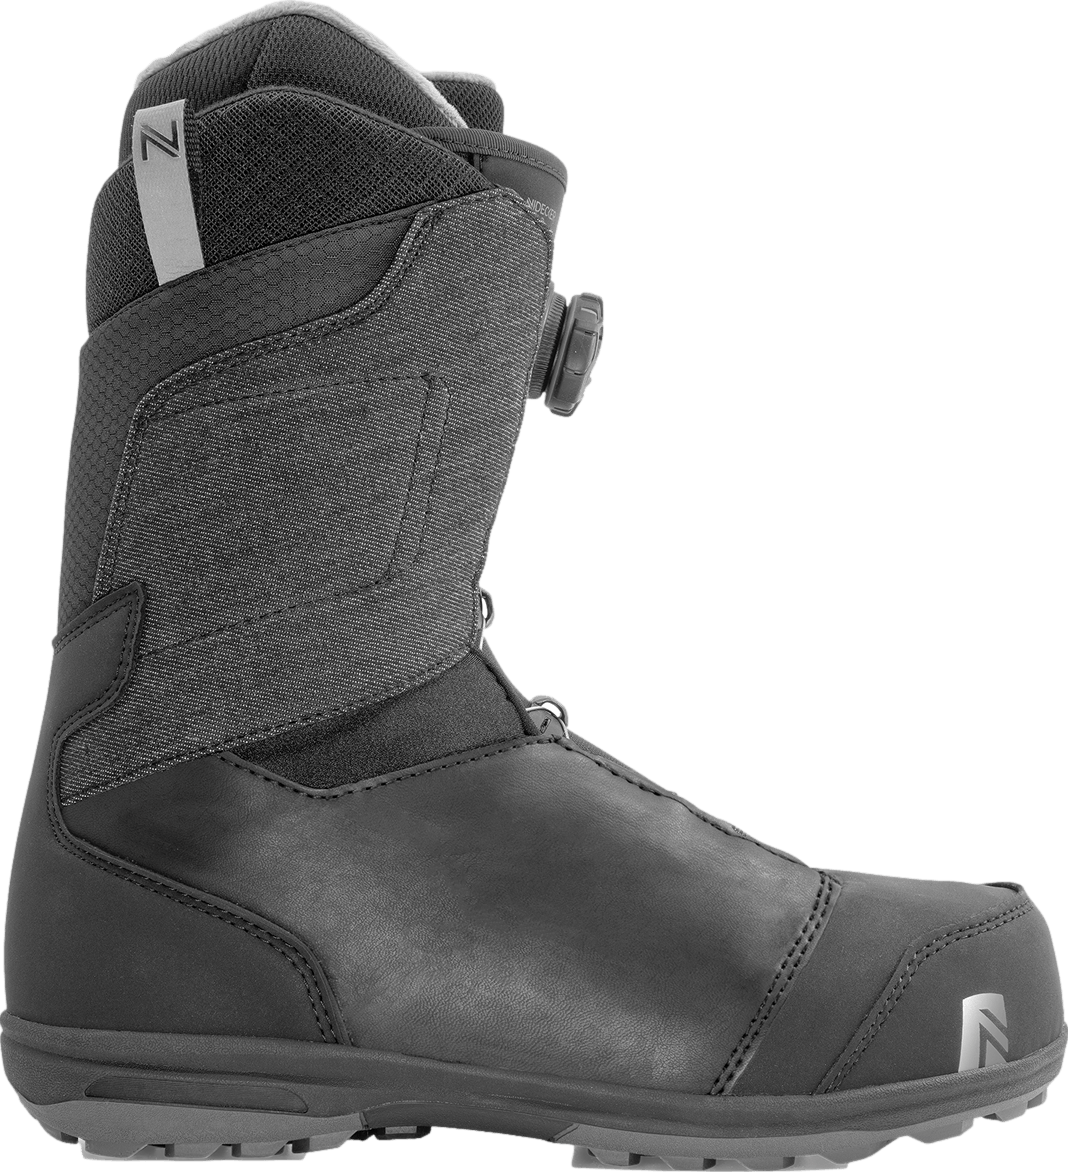 Nidecker Aero BOA Coiler Snowboard Boots · 2021